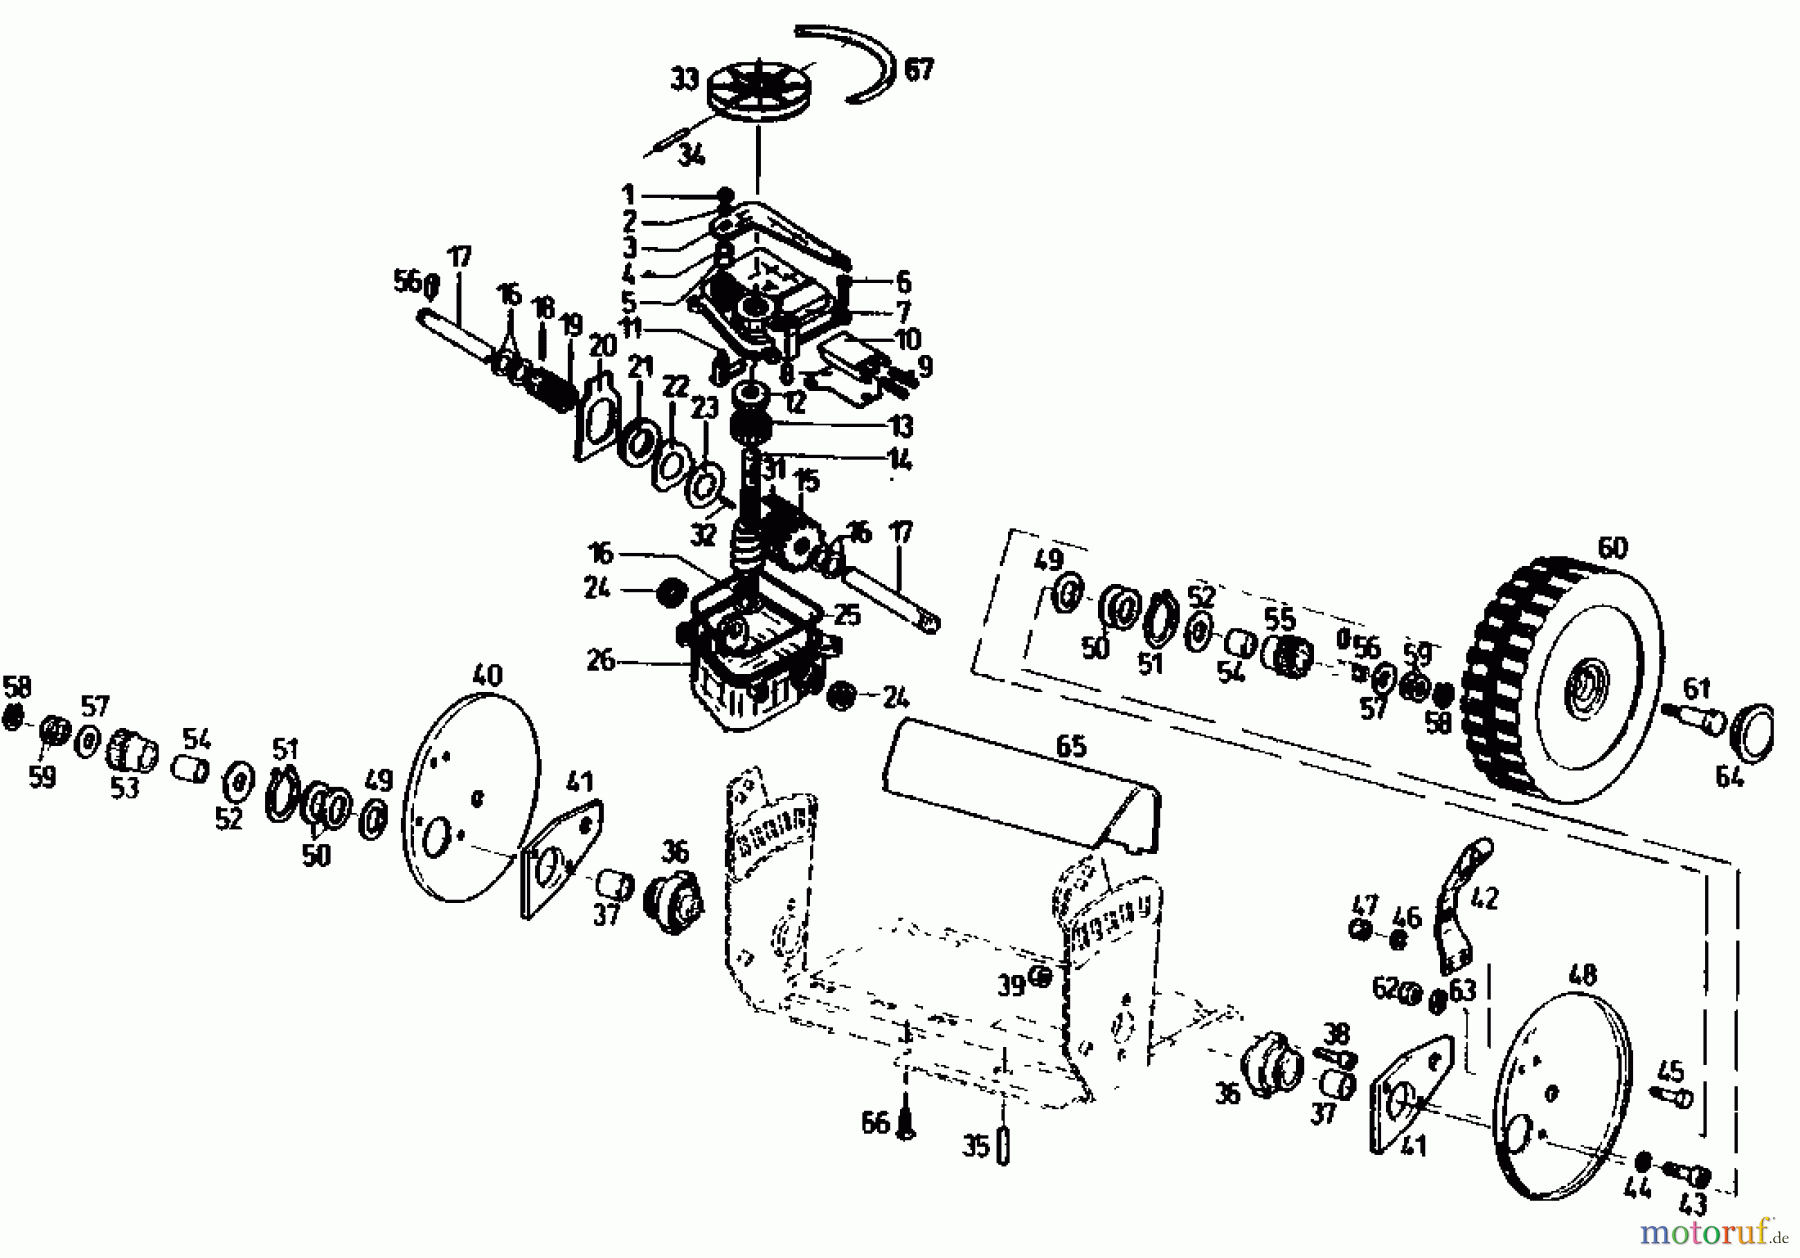  Gutbrod Petrol mower self propelled TURBO HBSR 04011.03  (1991) Gearbox